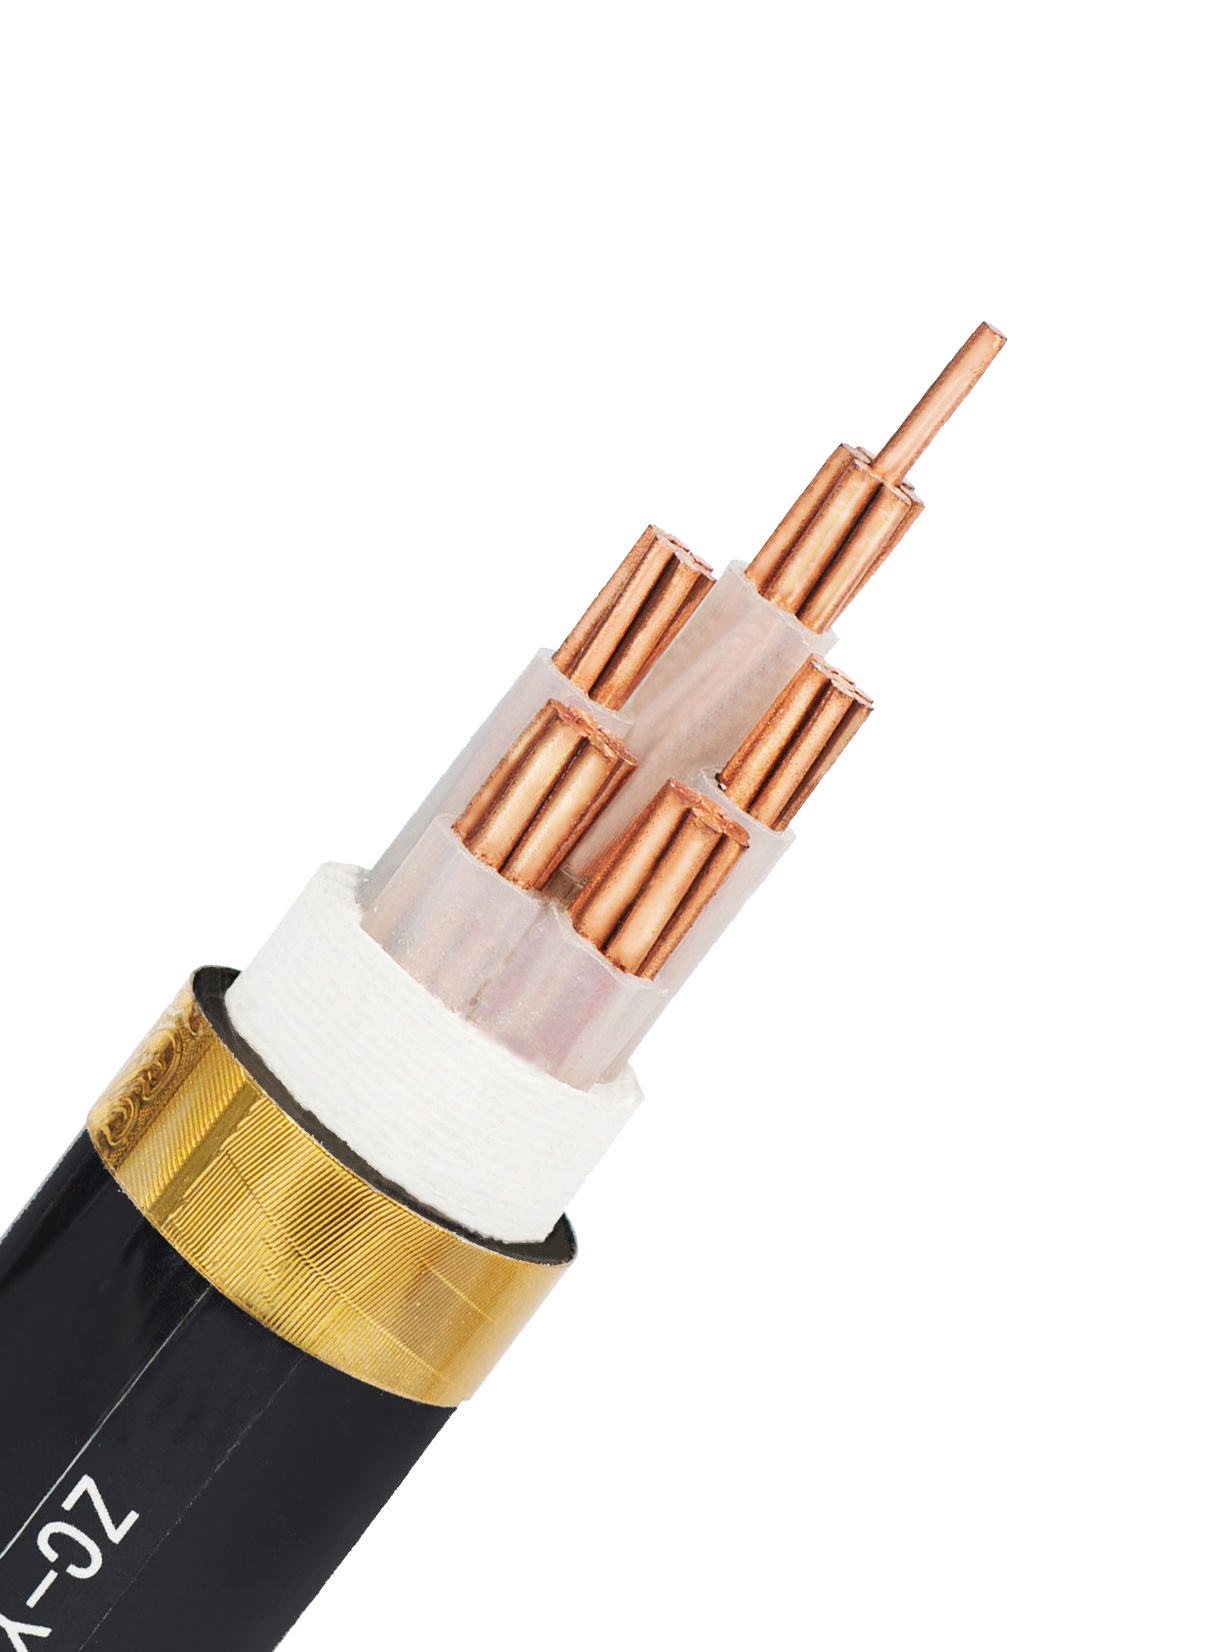 
                Стандарт IEC 0.6/1кв Cu проводник AC ПВХ изоляцией XLPE алюминиевых МЕДНОЙ ЛЕНТЫ бронированных ПВХ кабеля электропитания
            